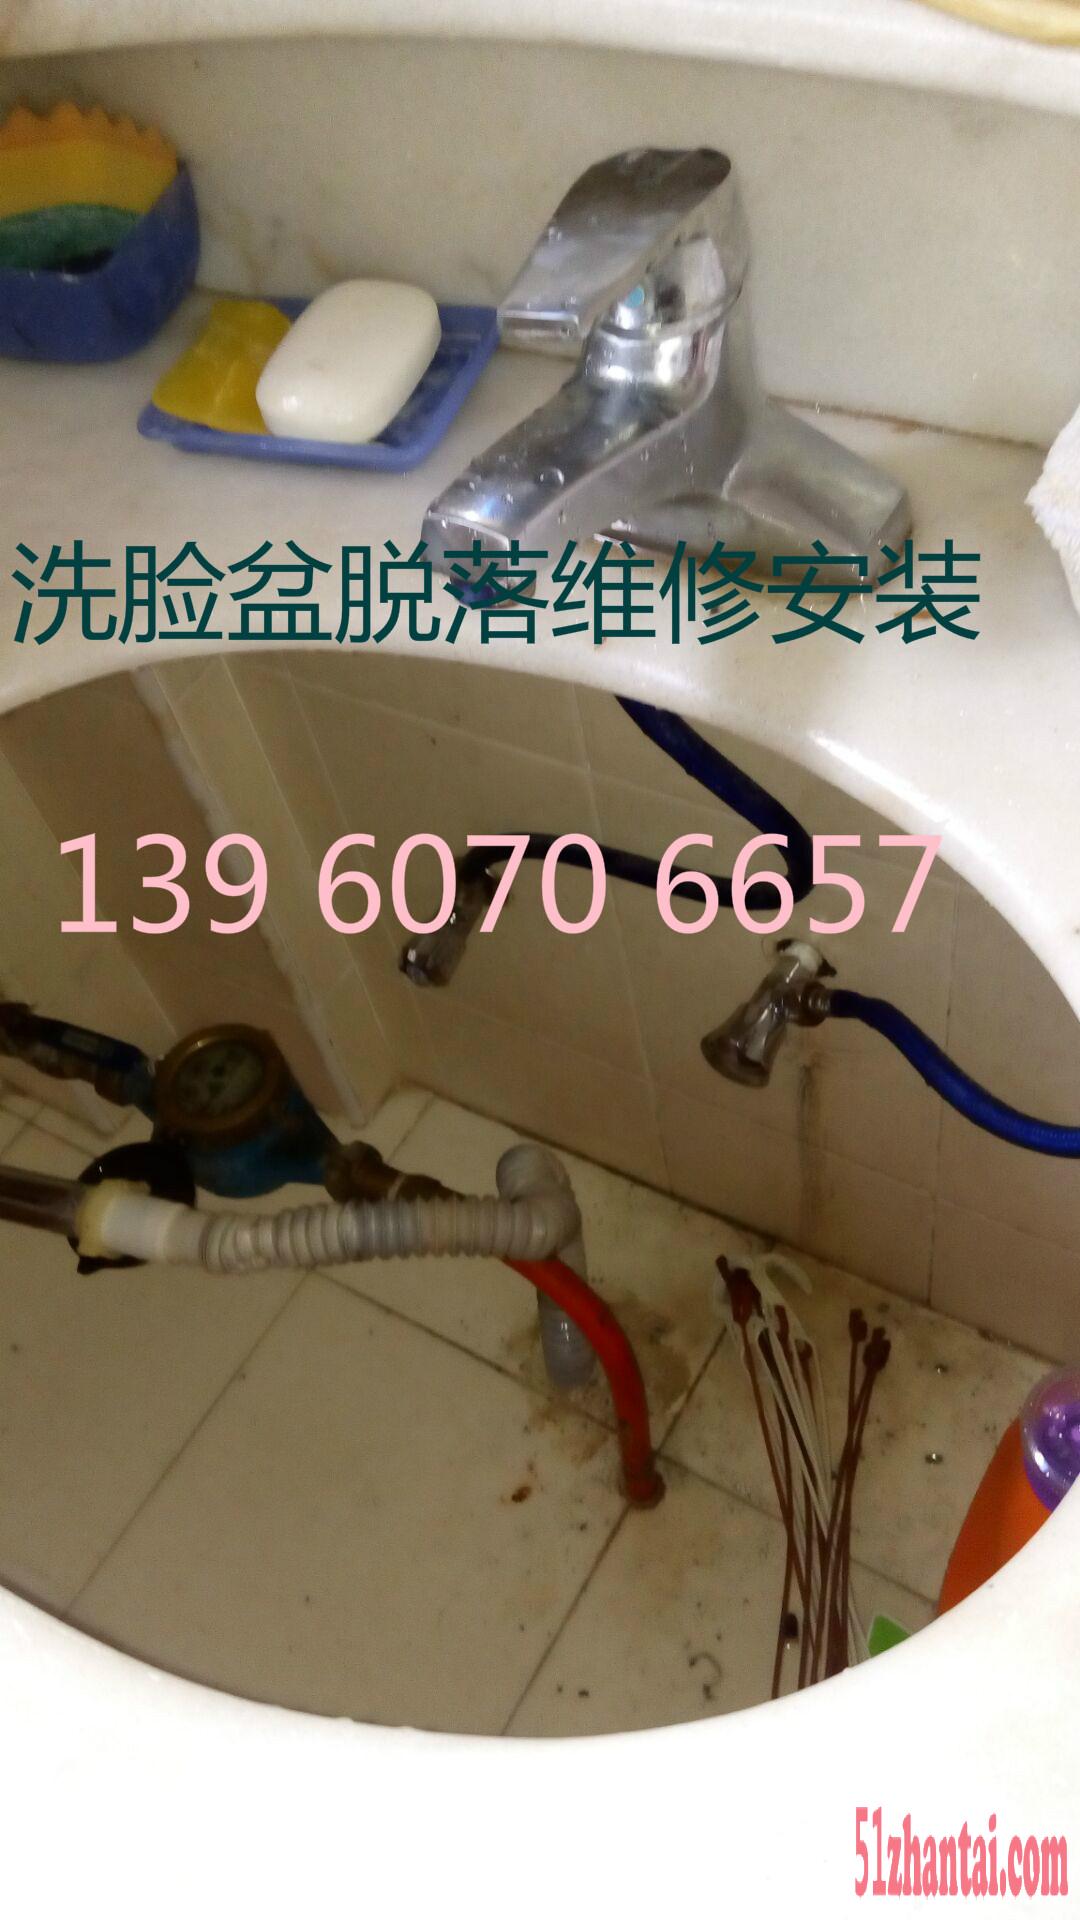 福州水管维修 水管安装 下水管漏水维修改造更换水龙头-图3